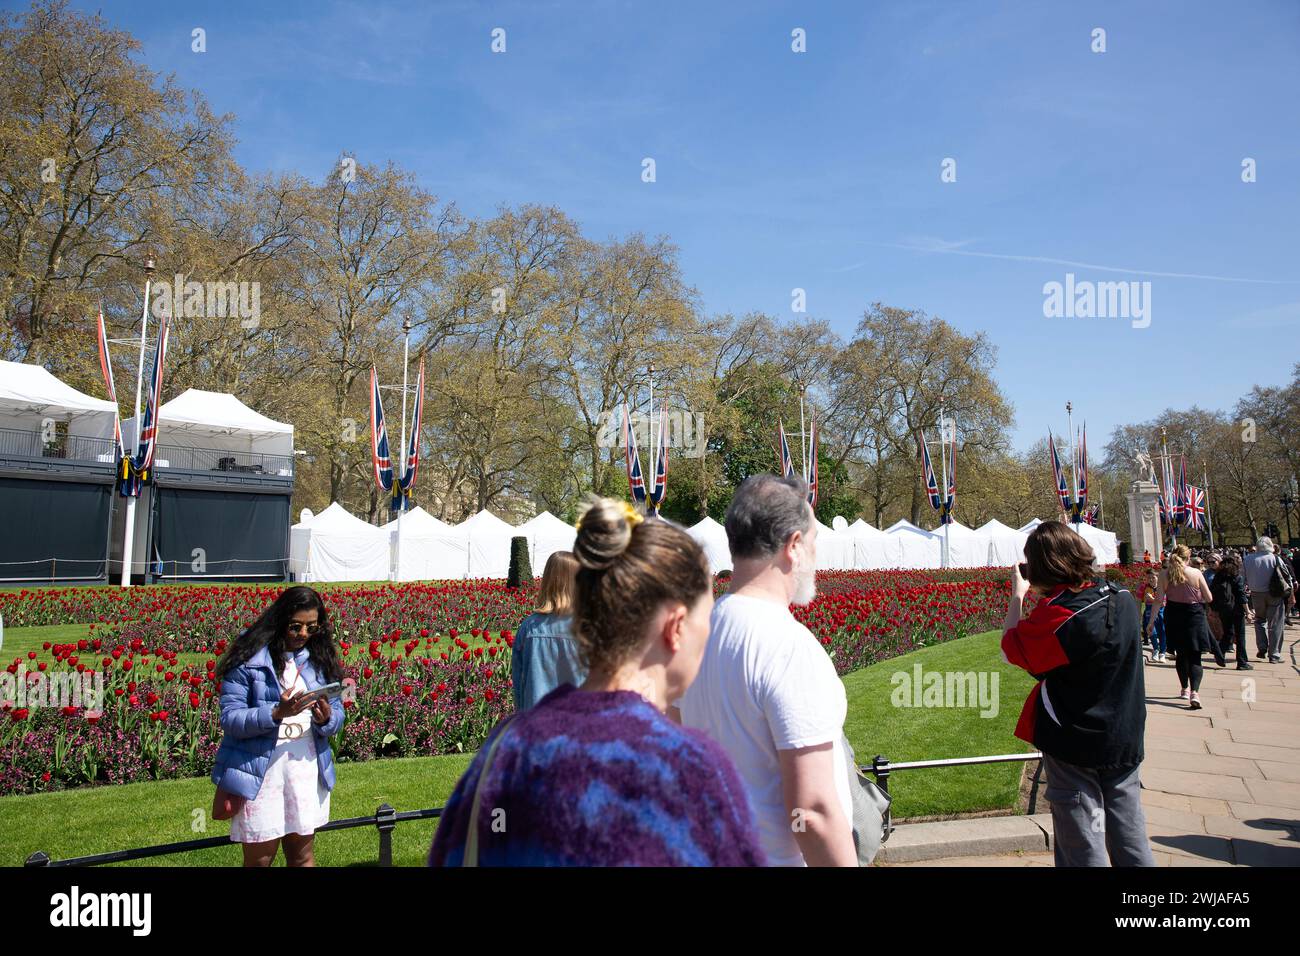 Die Leute gehen an Zelten vorbei, die in der Nähe des Buckingham Palace aufgestellt wurden, während sich London auf die Krönung von König Karl III. Vorbereitet Stockfoto